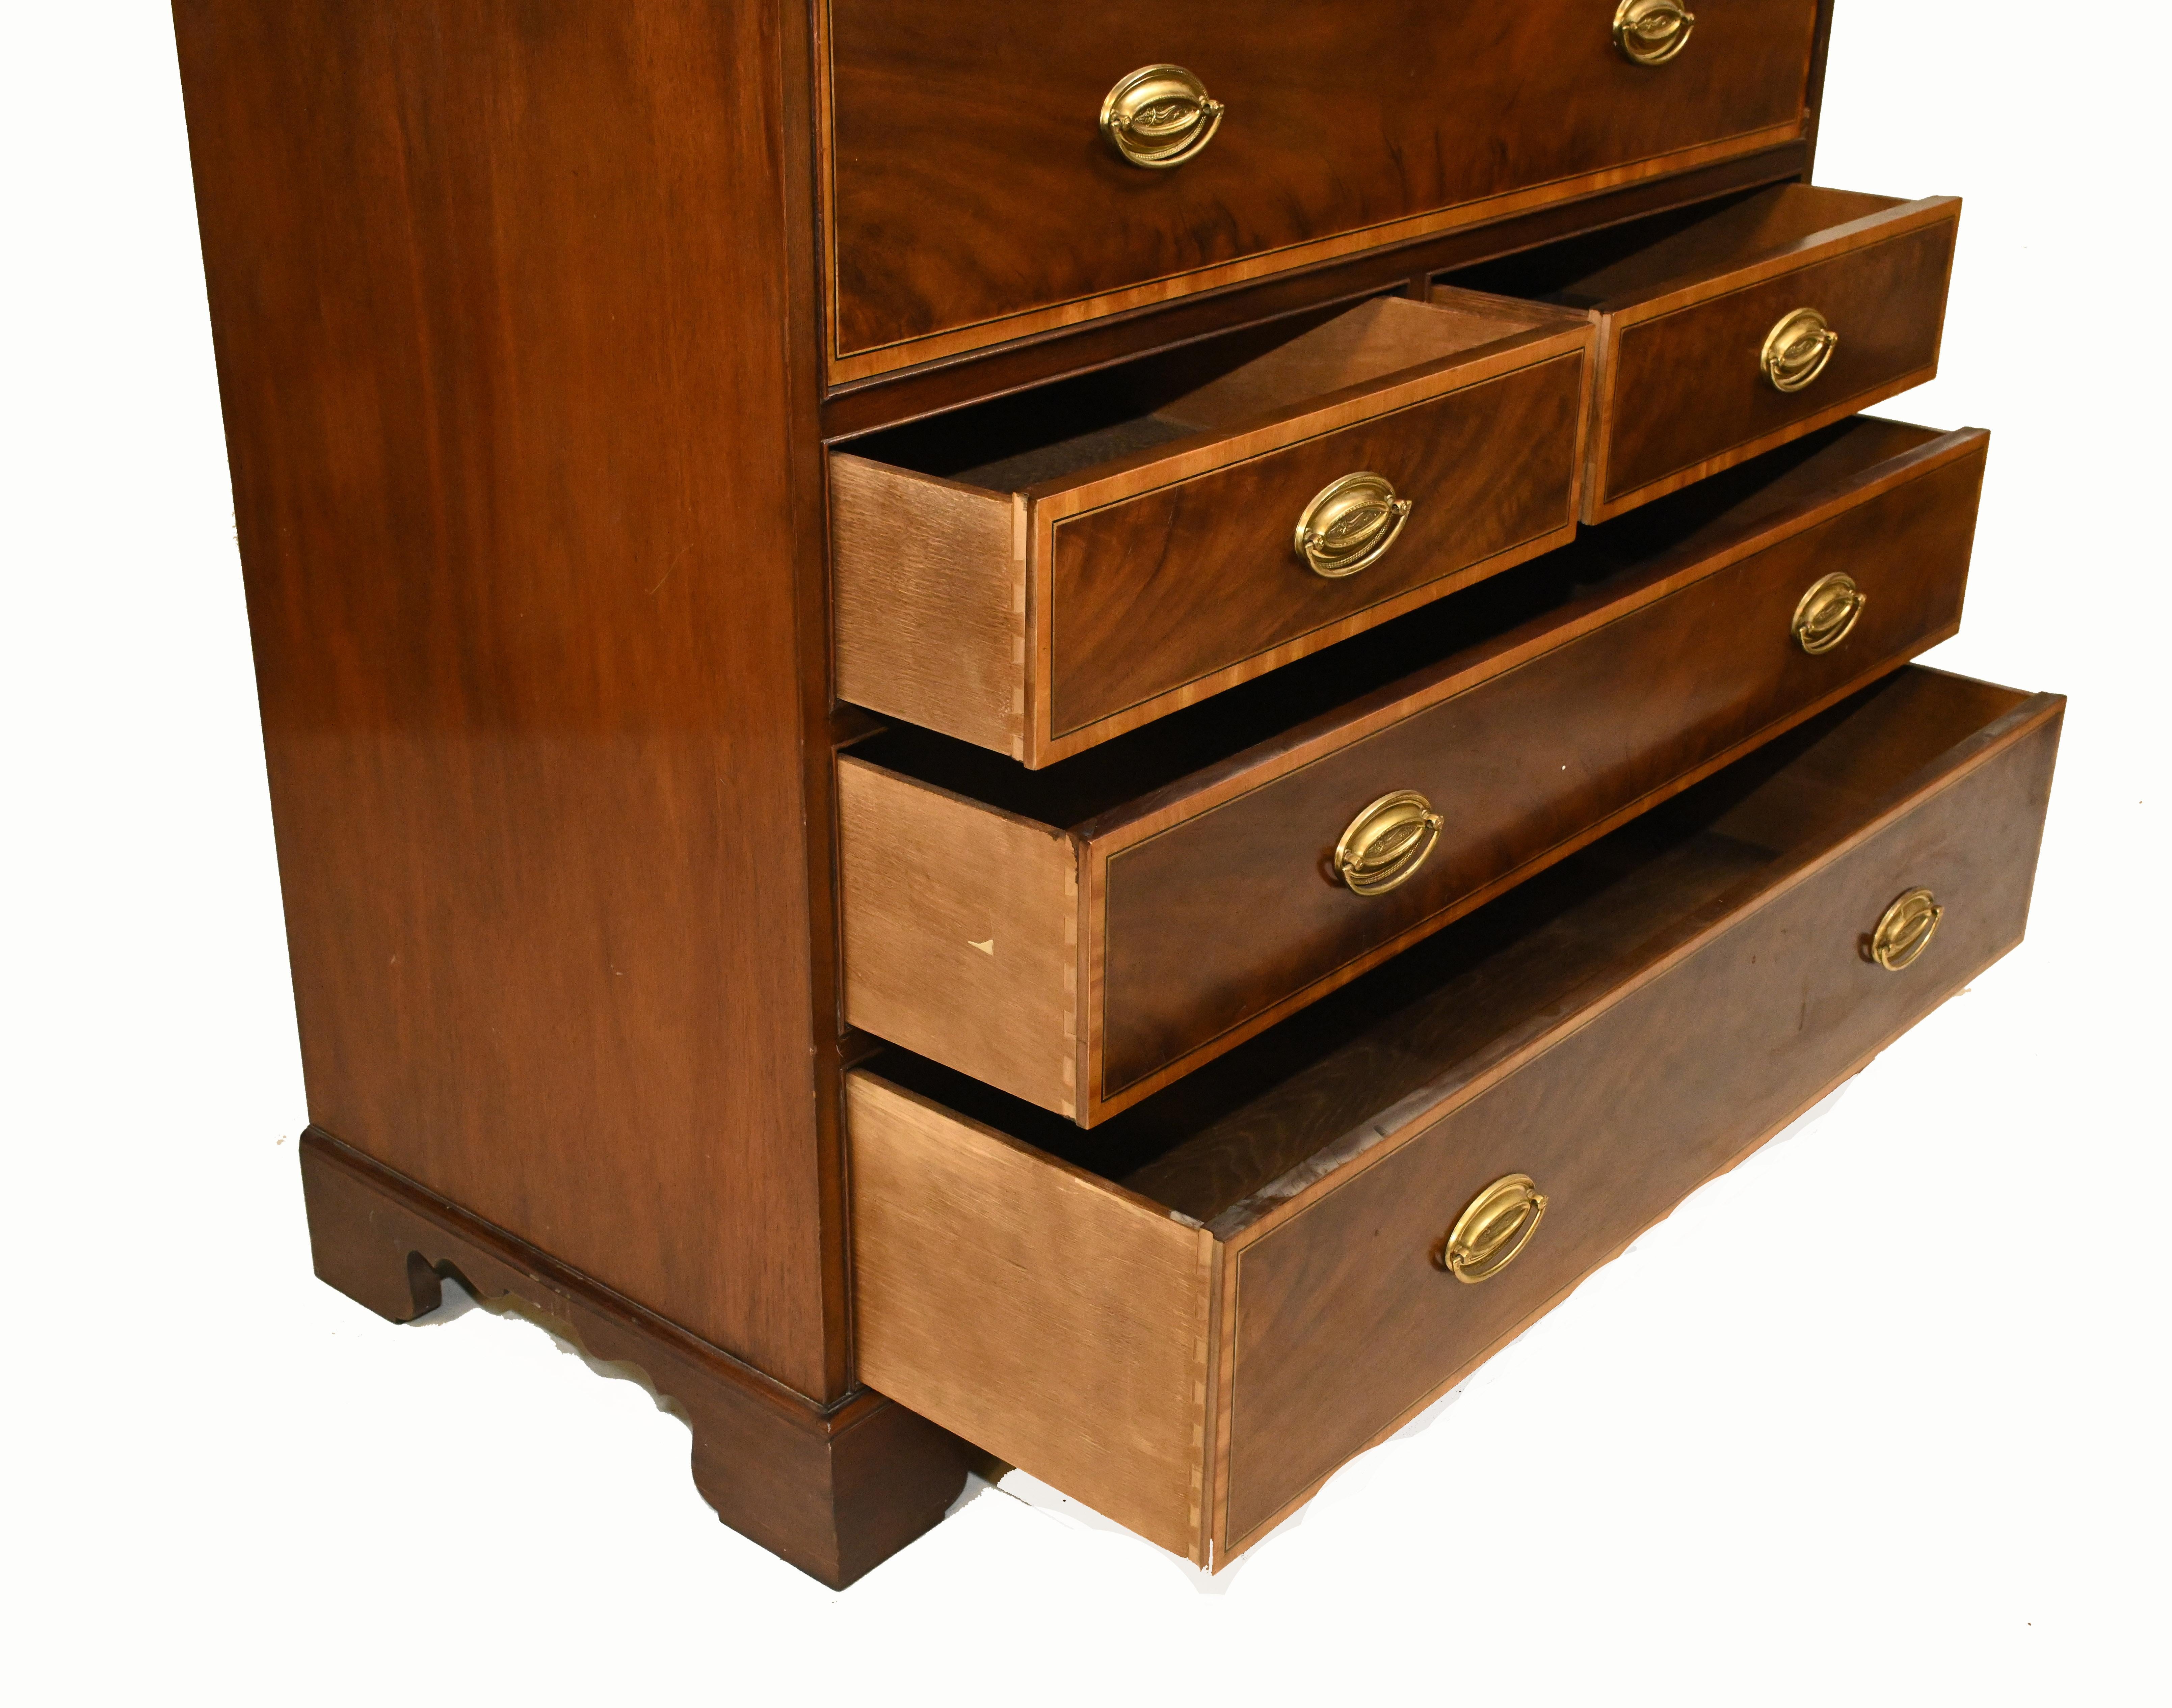 Sheraton Secretaire Bookcase Antique Mahogany Desk, 1910 For Sale 11